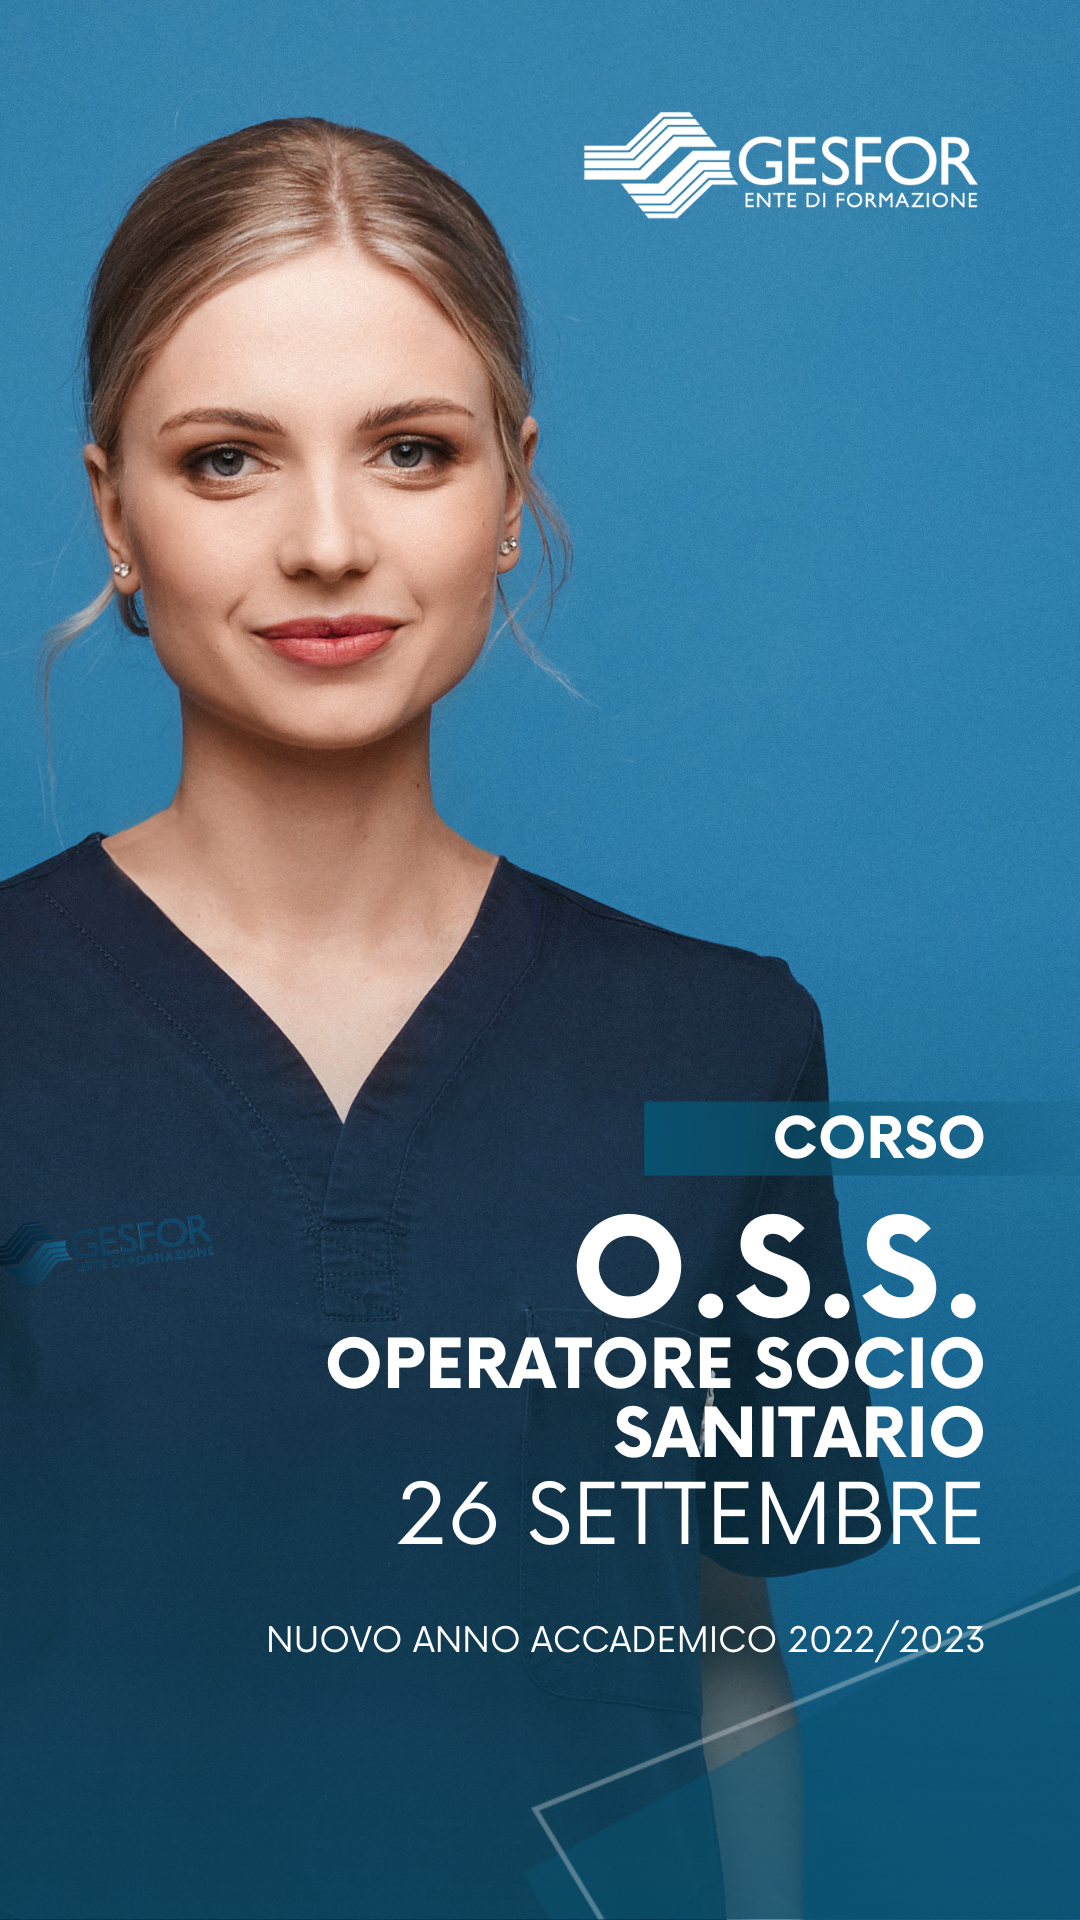 CORSO O.S.S. – OPERATORE SOCIO SANITARIO